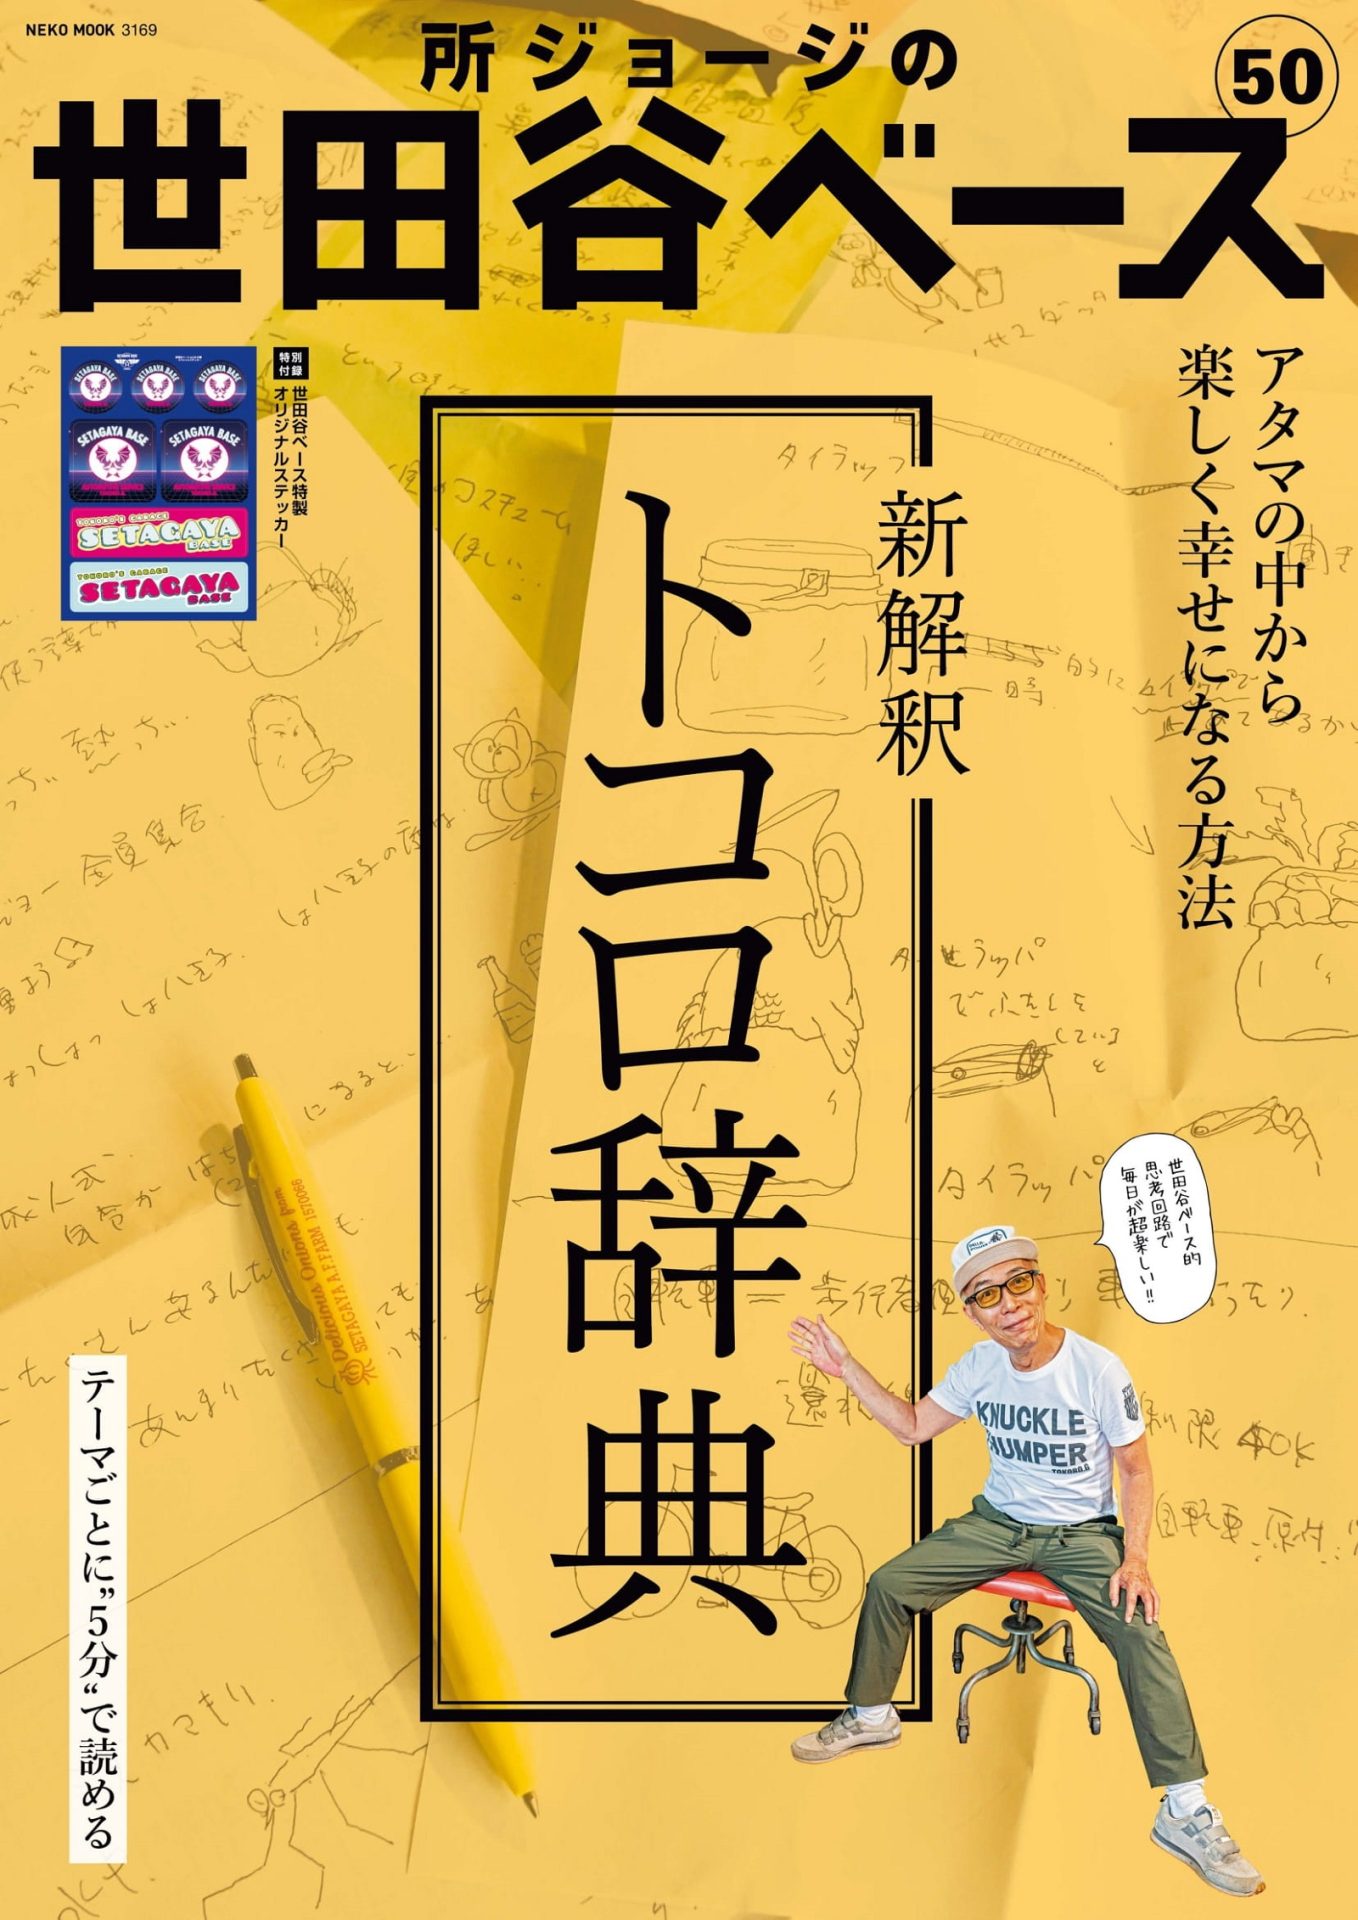 世田谷ベース vol.48 | ネコ・パブリッシング